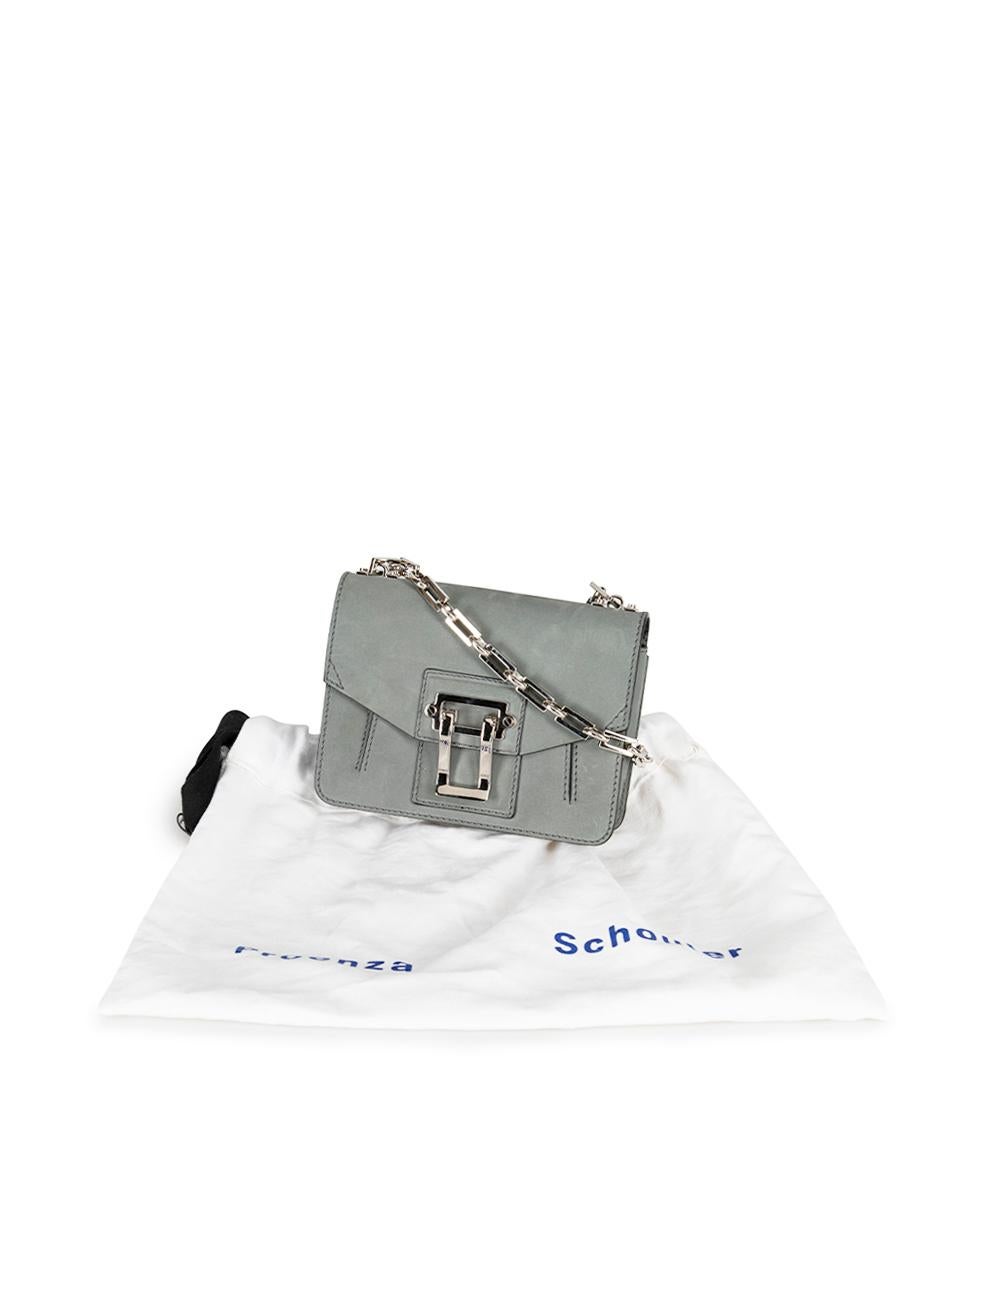 Proenza Schouler Women's Grey Suede Hava Chain Shoulder Bag 5